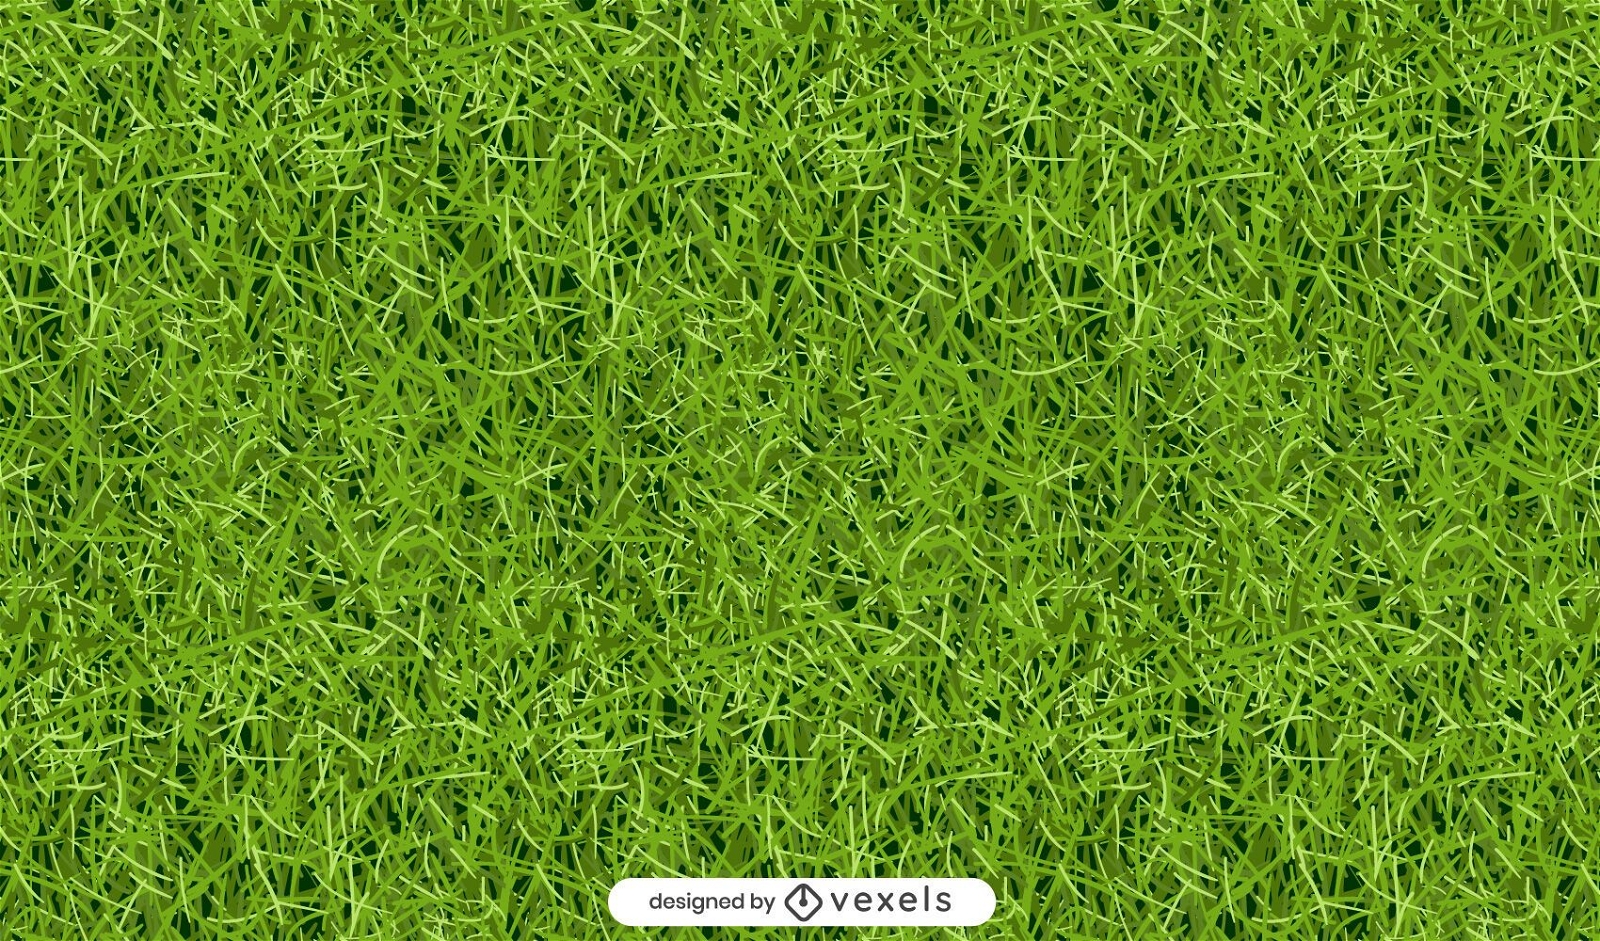 Green grass pattern design